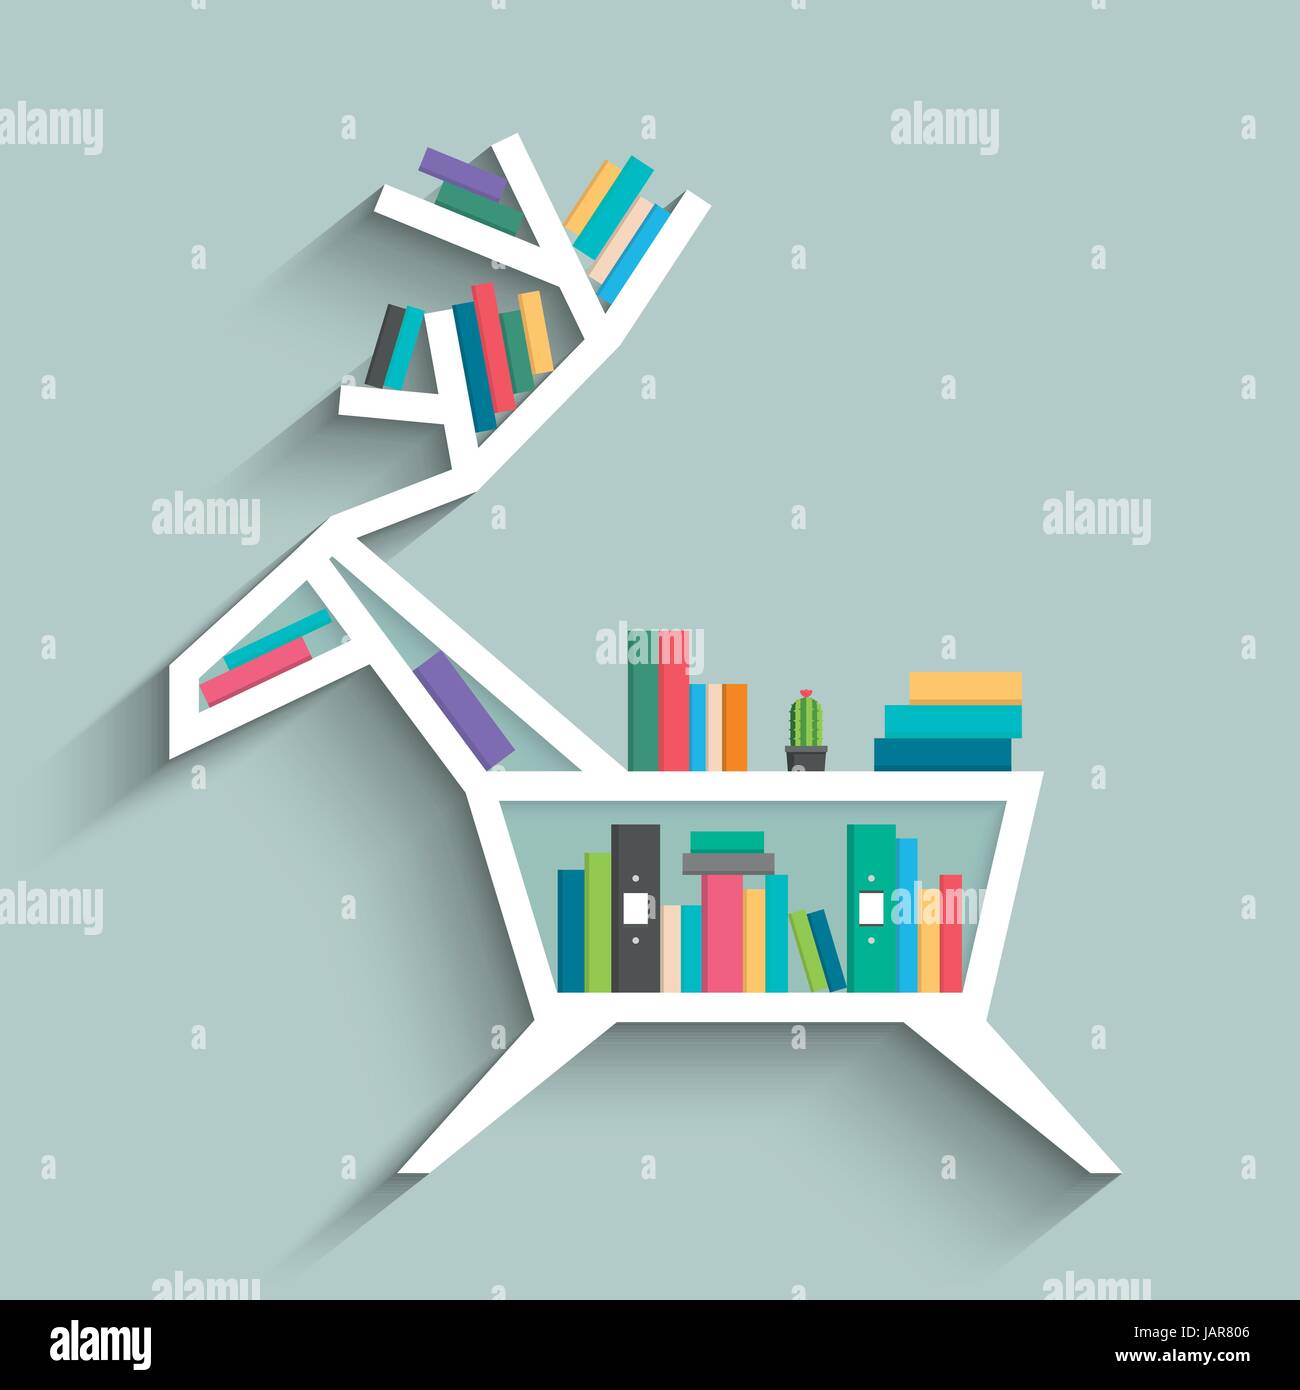 Bücherregal in Form von Hirsch mit bunten Bücher, Uhr und Kaktus auf blau  Pastell farbigen Hintergrund. Flaches Design. Vektor-Illustration  Stock-Vektorgrafik - Alamy